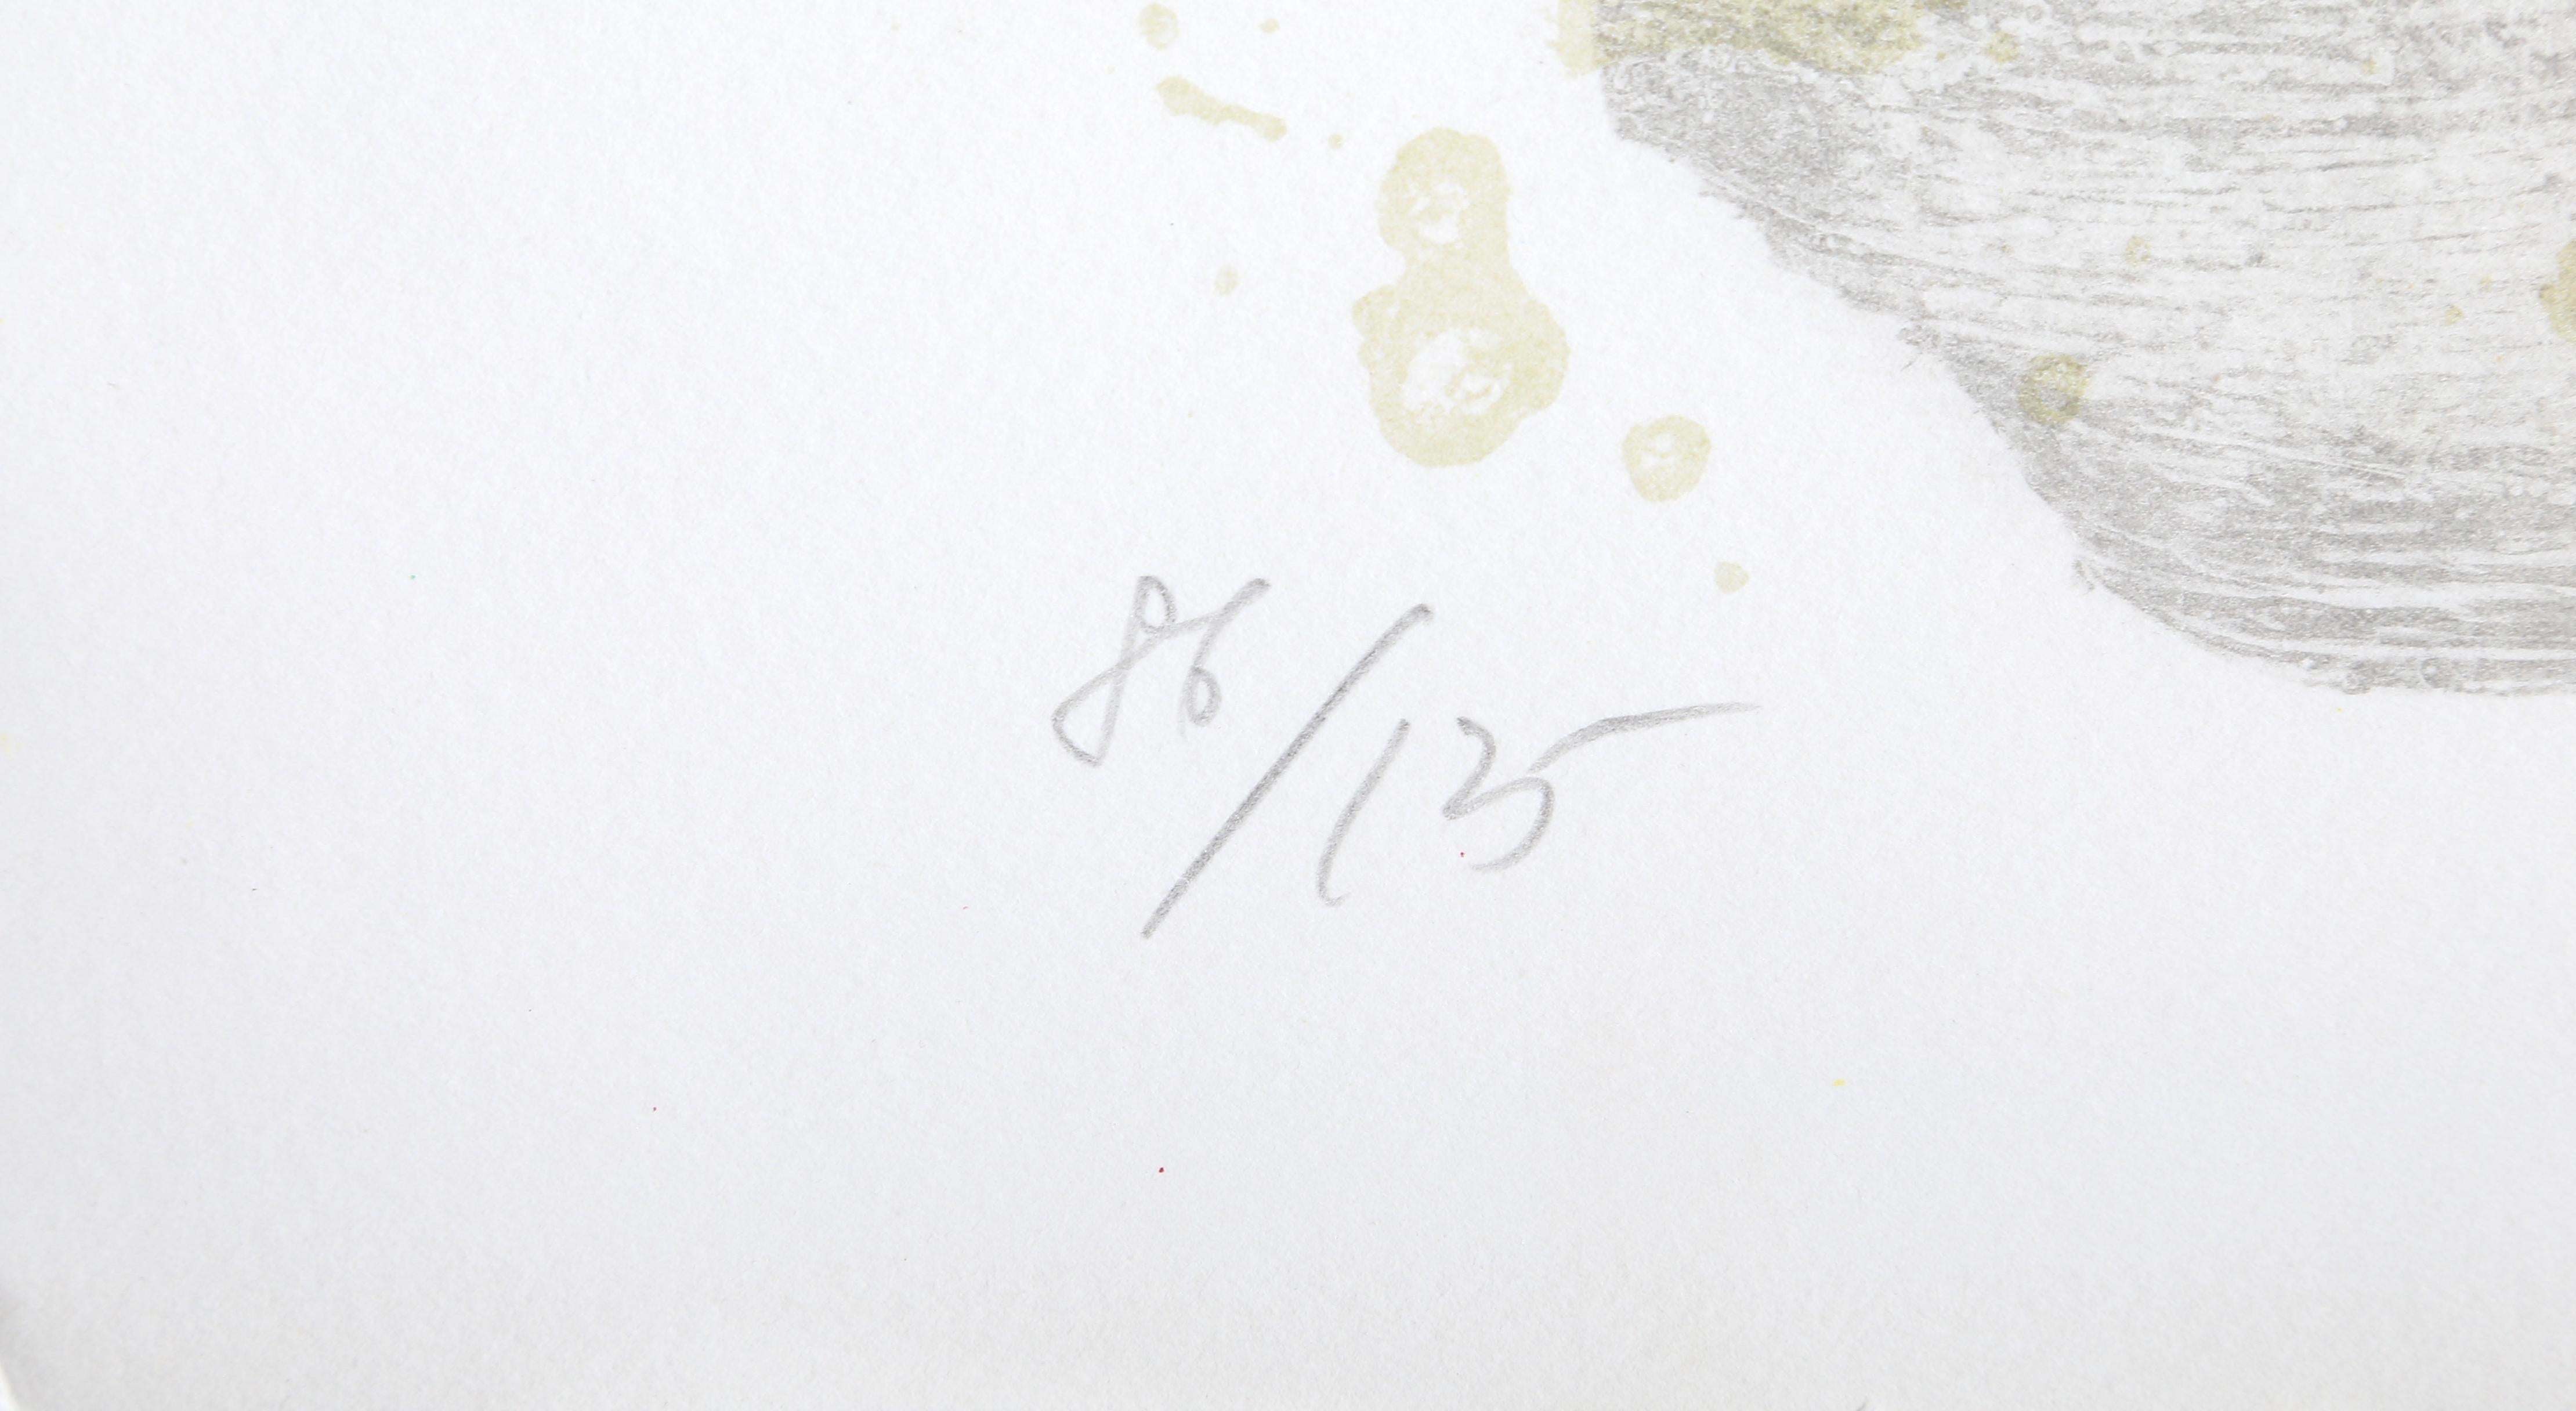 Künstler:  Theo Tobiasse, Franzose (1927 - 2012)
Titel:  Rachel
Jahr:  1984
Medium:  Lithographie, mit Bleistift signiert und nummeriert
Auflage:  86/125
Bild: 38 x 26 Zoll
Größe:  42 x 28.5 in. (106.68 x 72.39 cm)
Rahmengröße:  46,5 x 33,5 Zoll